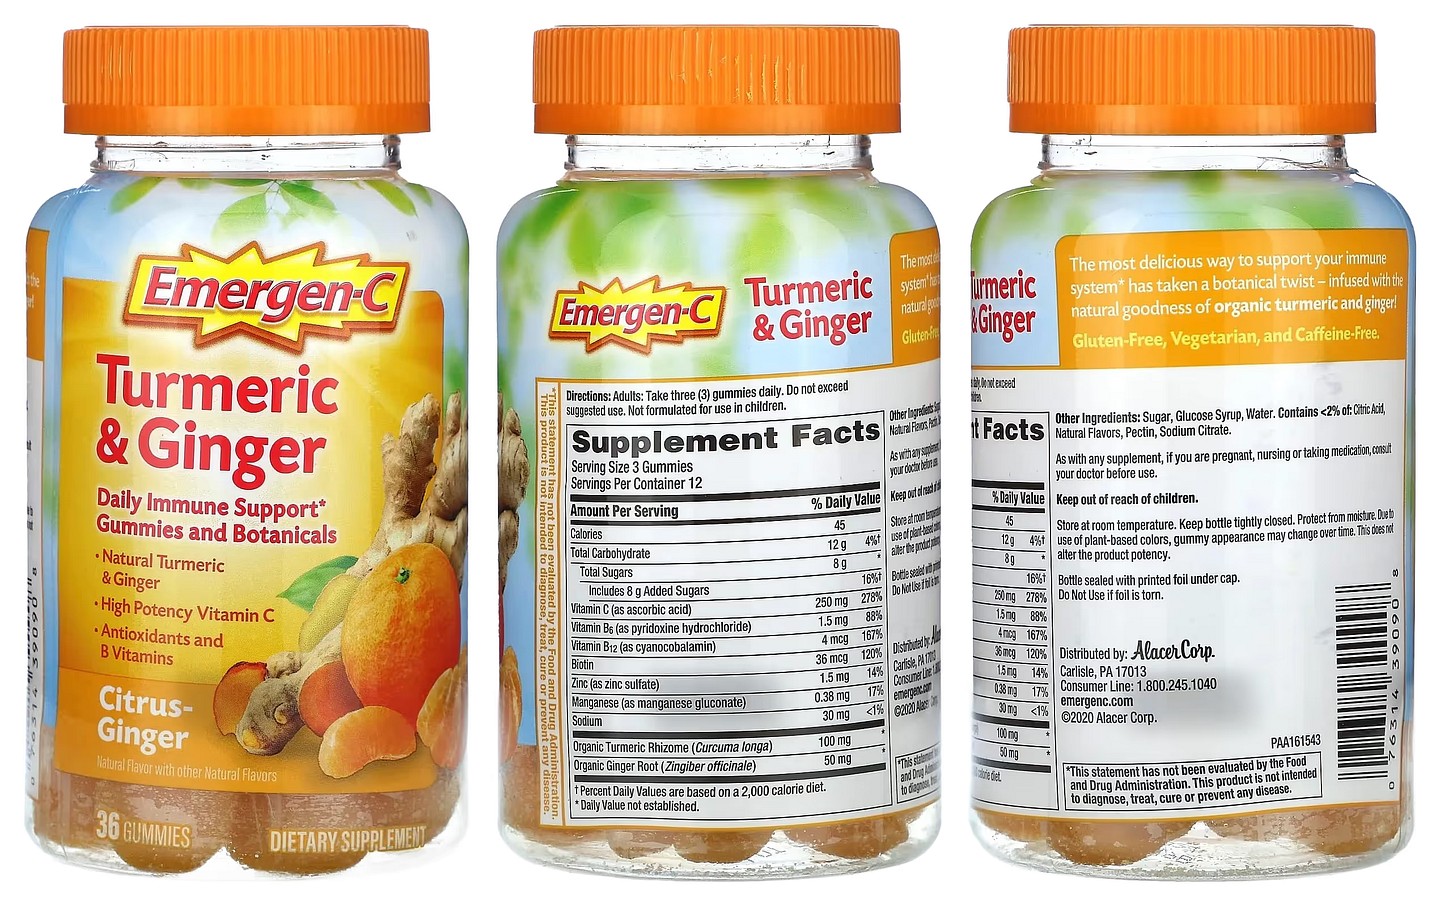 Emergen-C, Turmeric & Ginger, Citrus-Ginger packaging